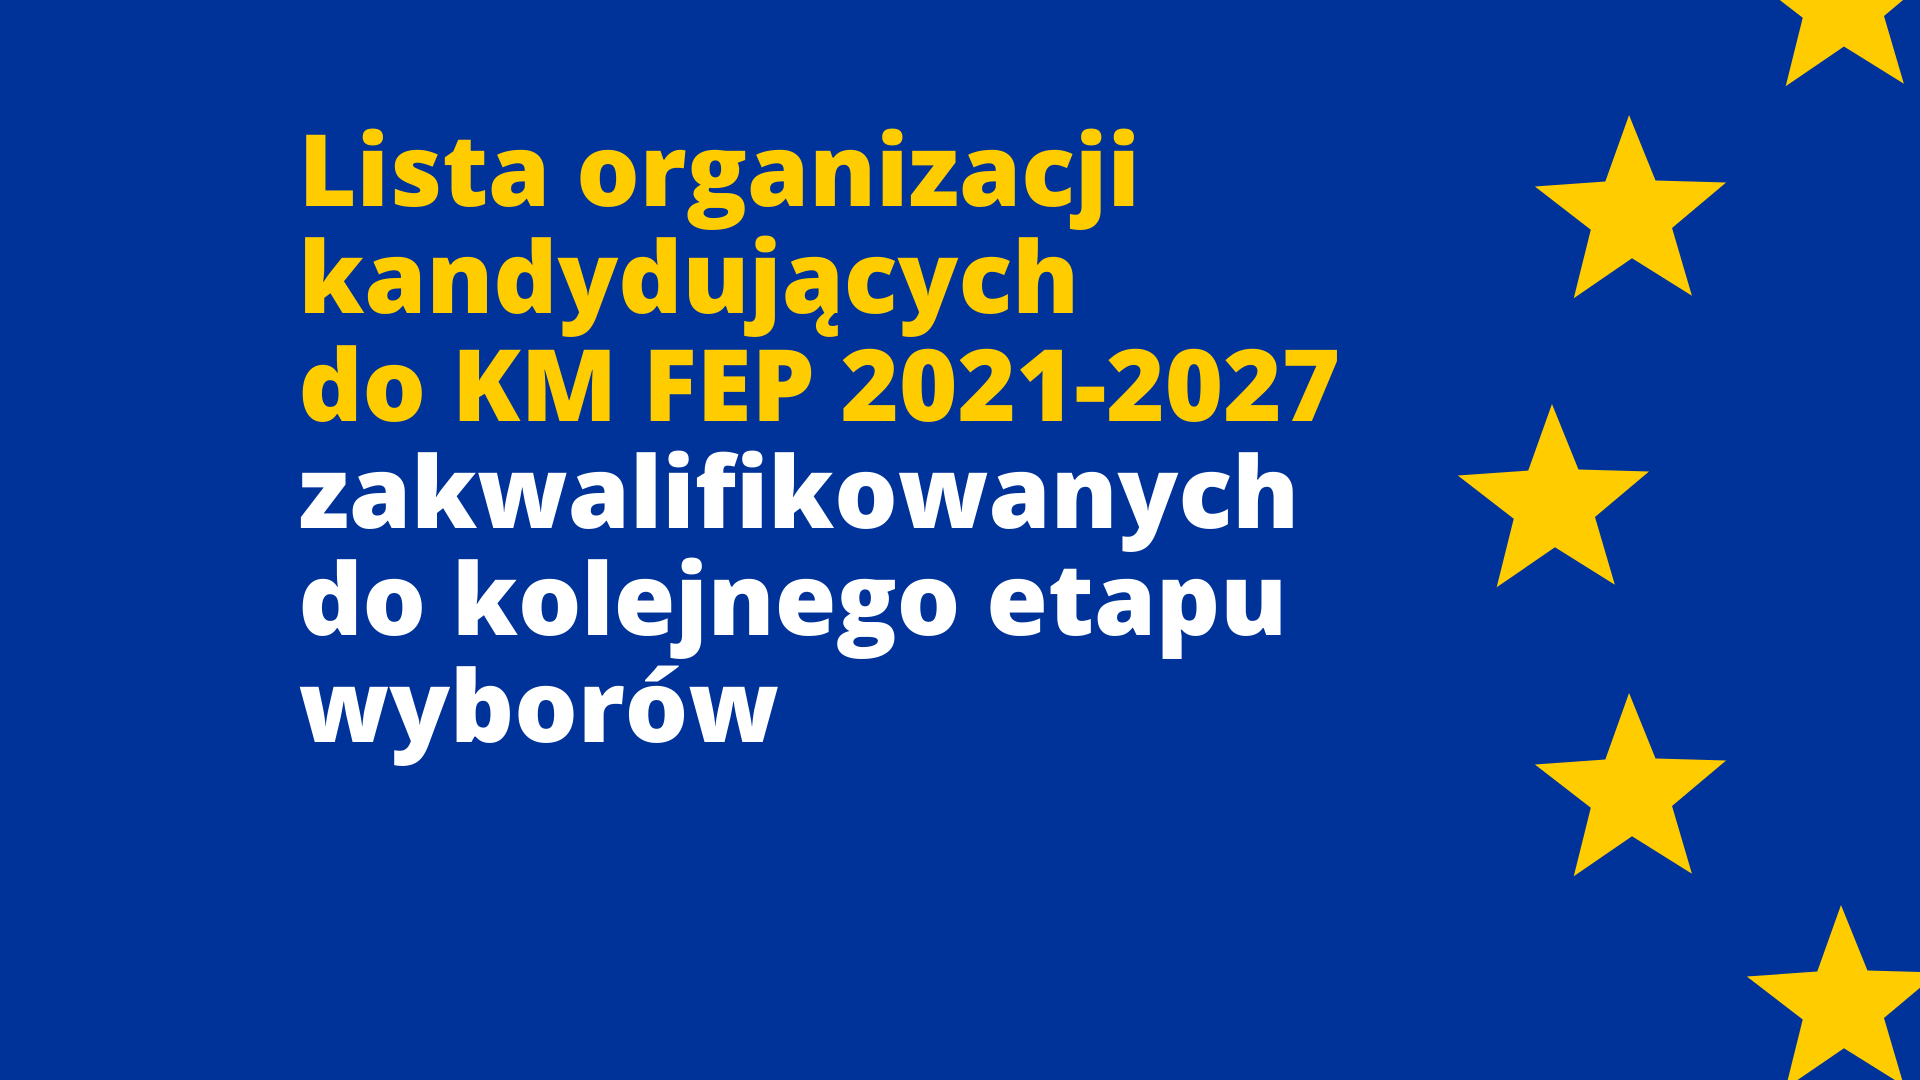 [AKTUALIZACJA 26.11 i 01.12] Lista organizacji kandydujących do KM FEP zakwalifikowanych do kolejnego etapu wyborów